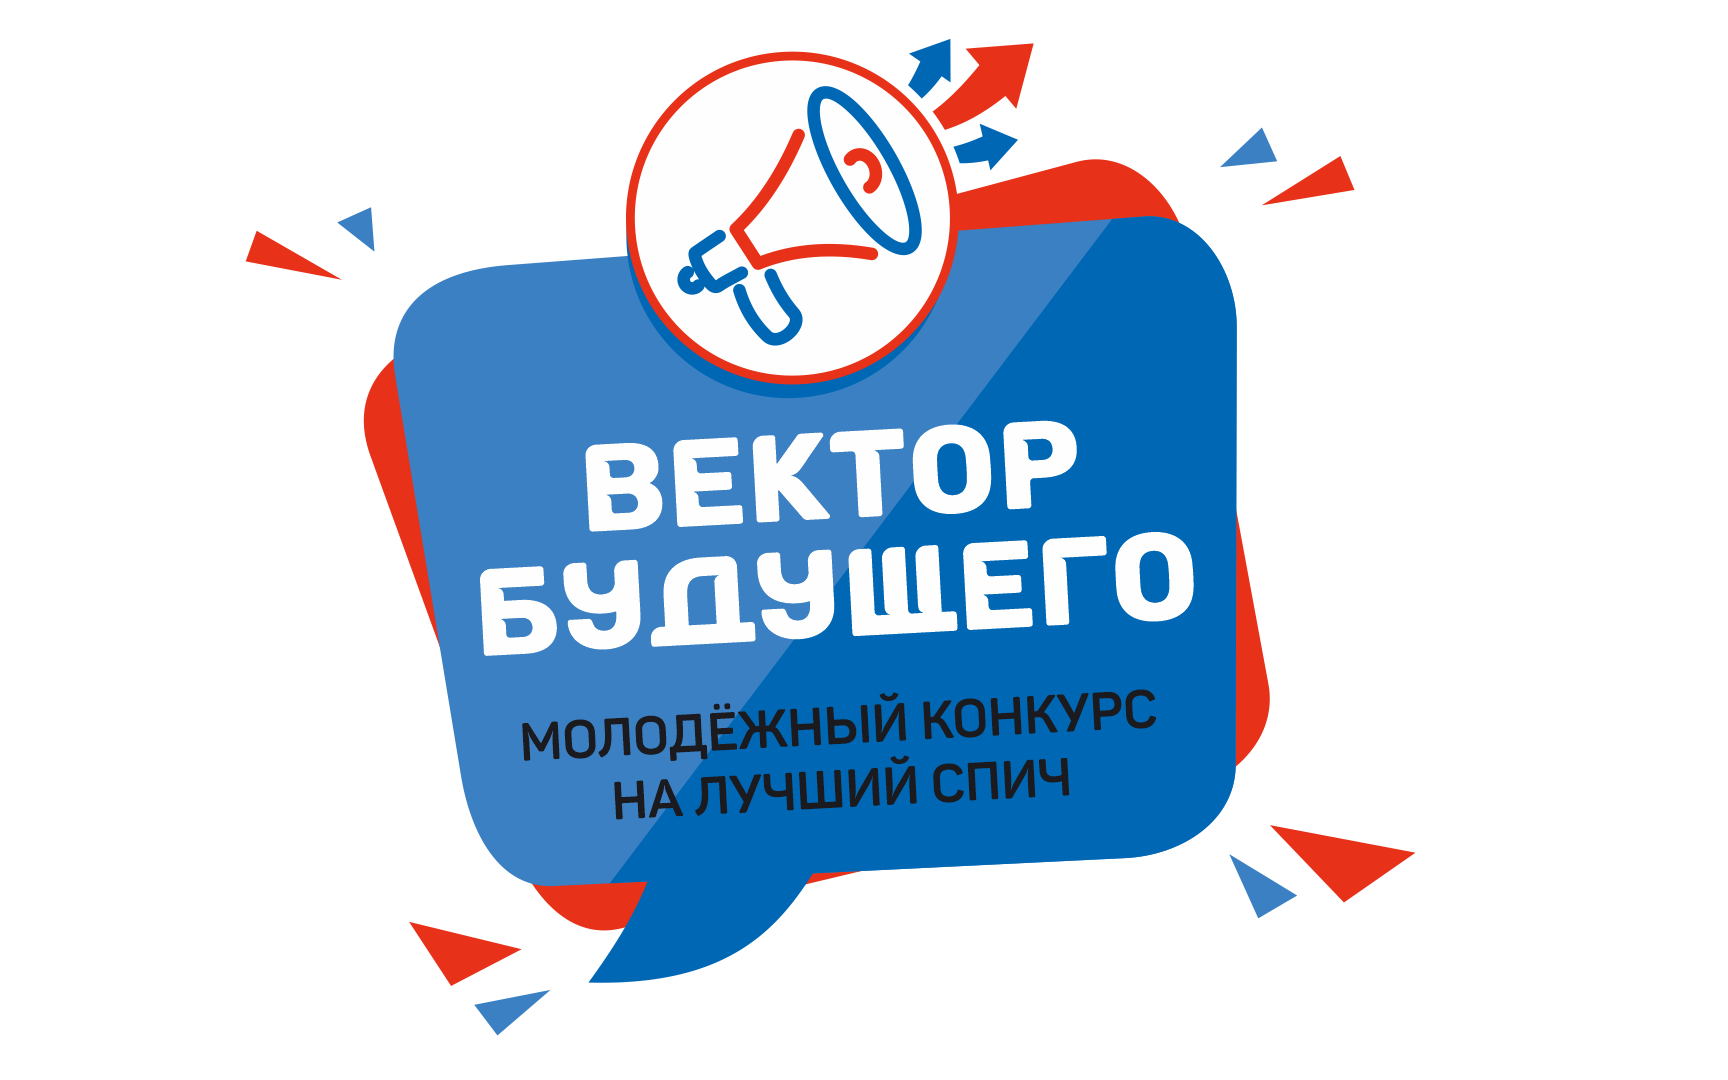 В Алтайском крае объявлен молодёжный конкурс на лучший спич о гражданской позиции